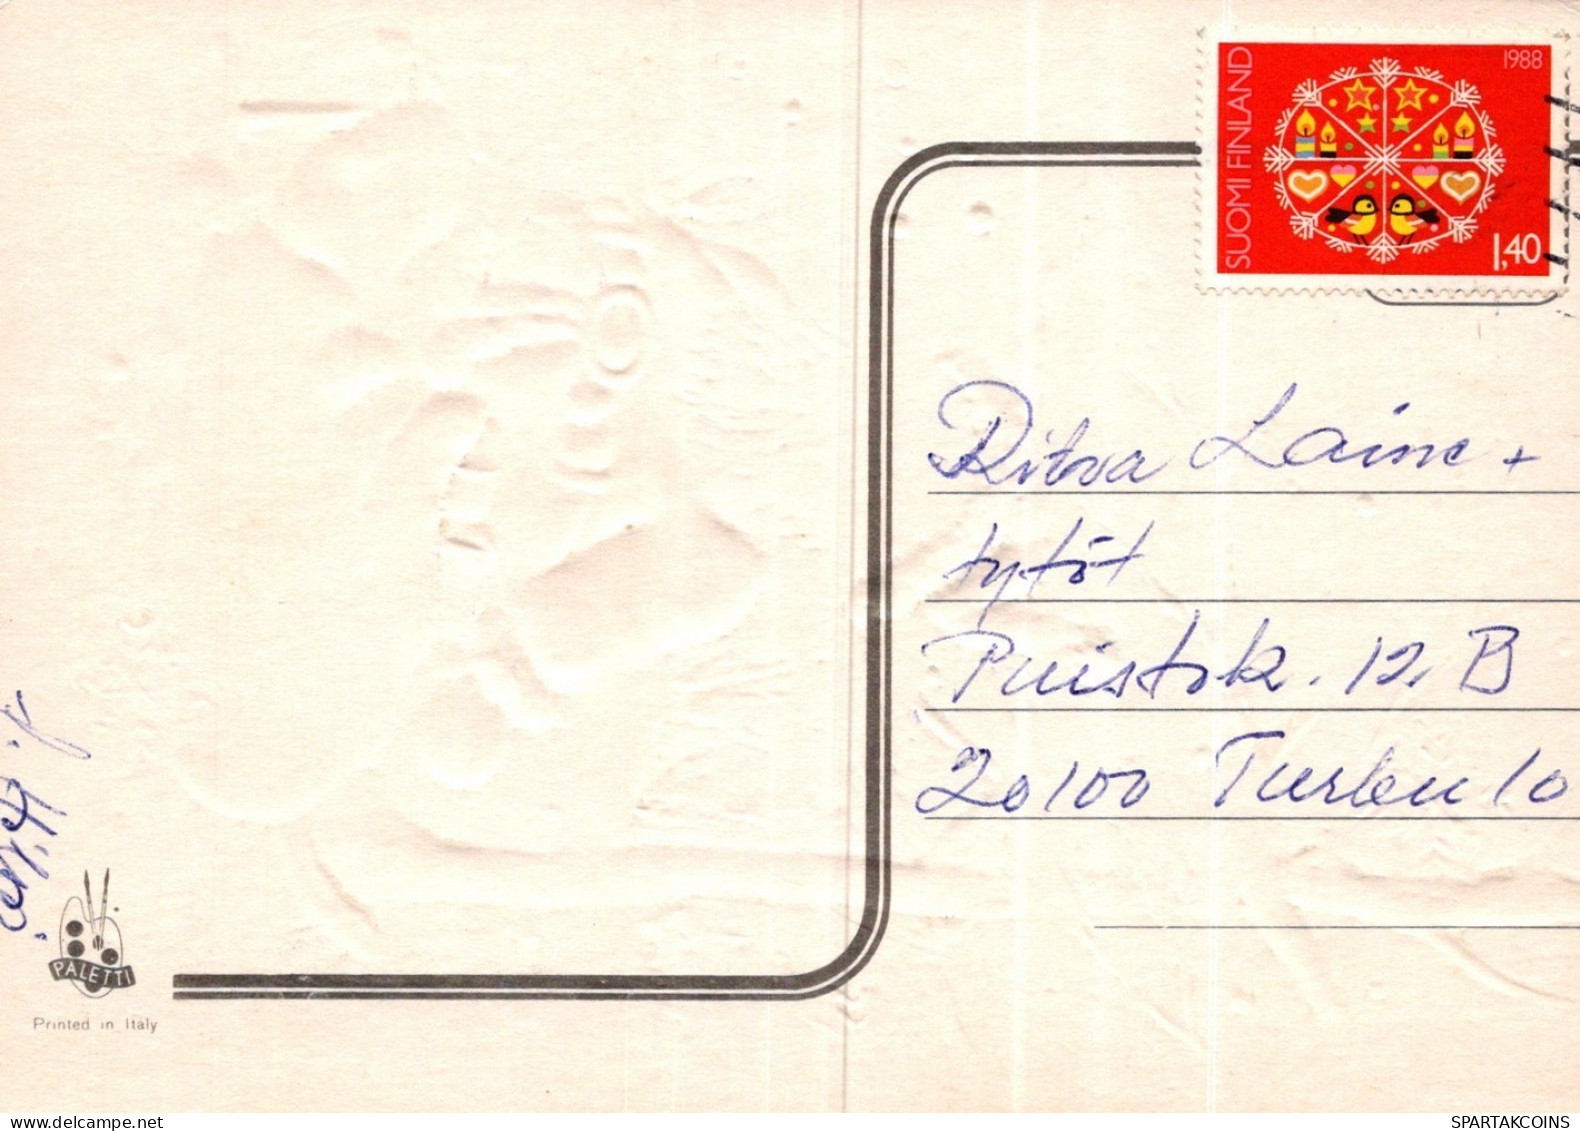 PÈRE NOËL NOËL Fêtes Voeux Vintage Carte Postale CPSM #PAK742.FR - Santa Claus